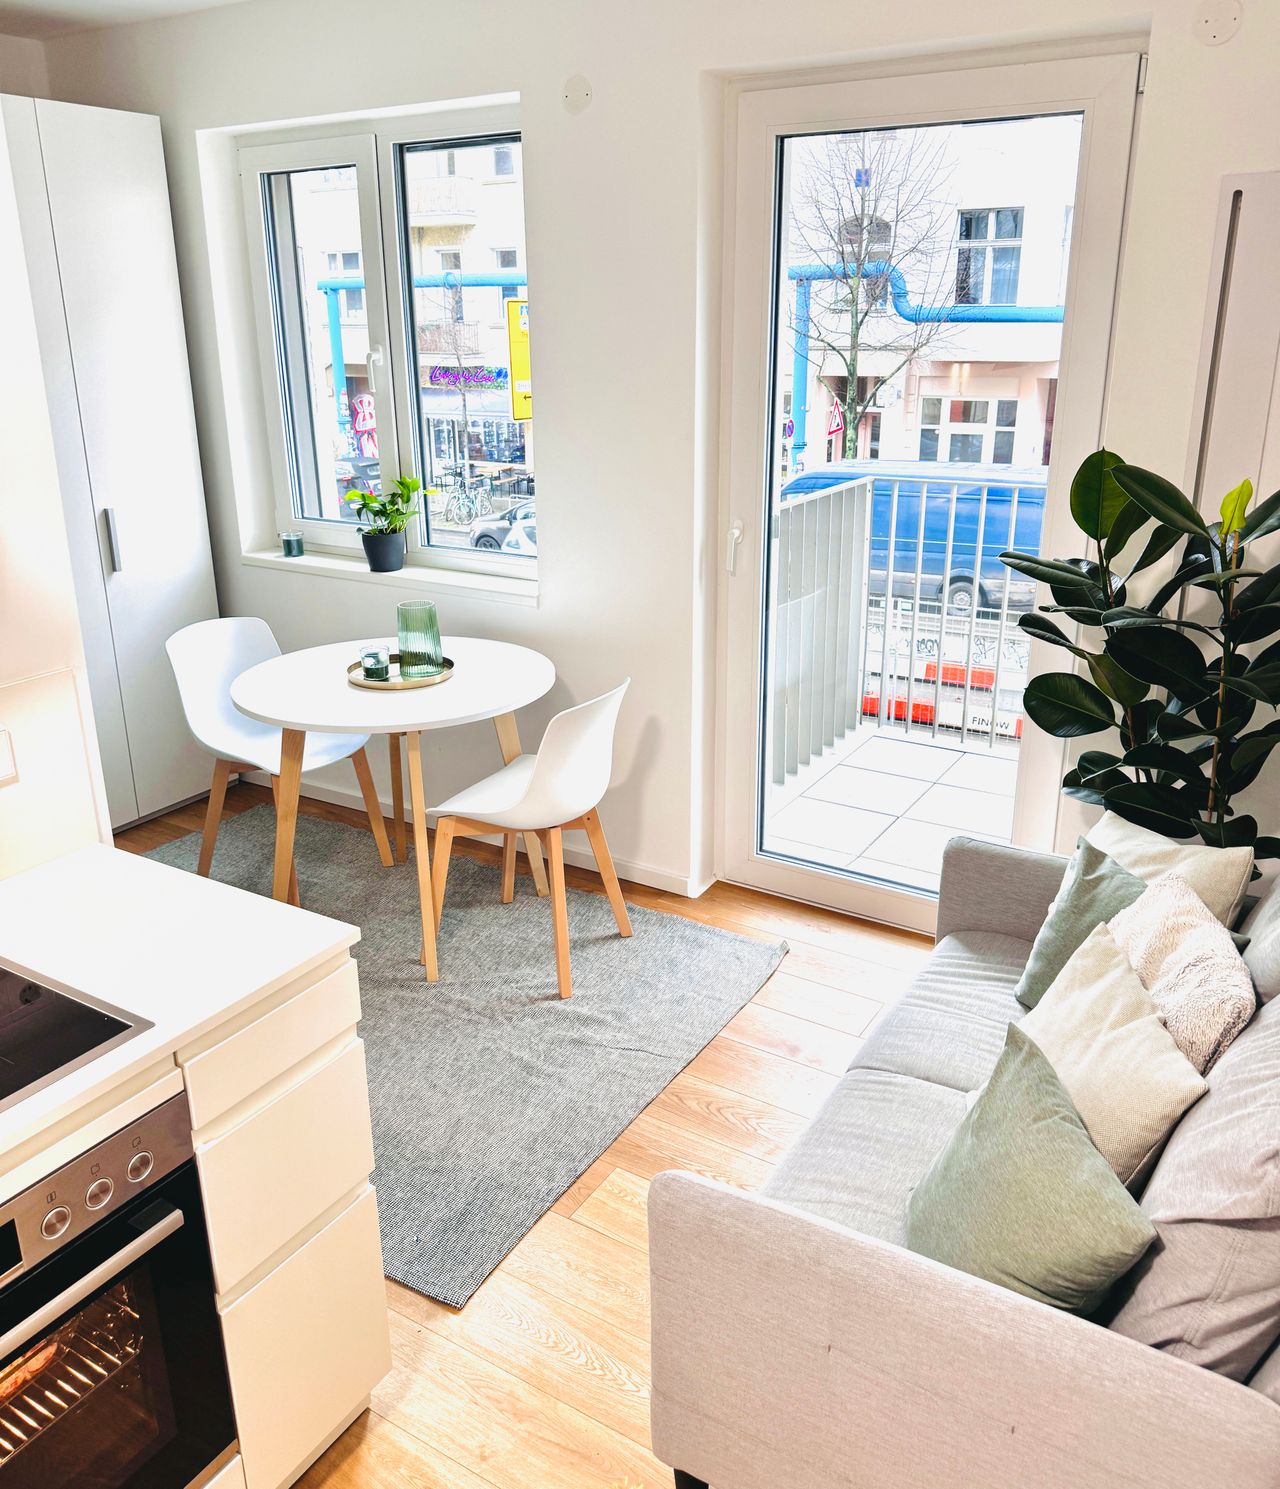 New and beautiful apartment in Friedrichshain, Berlin